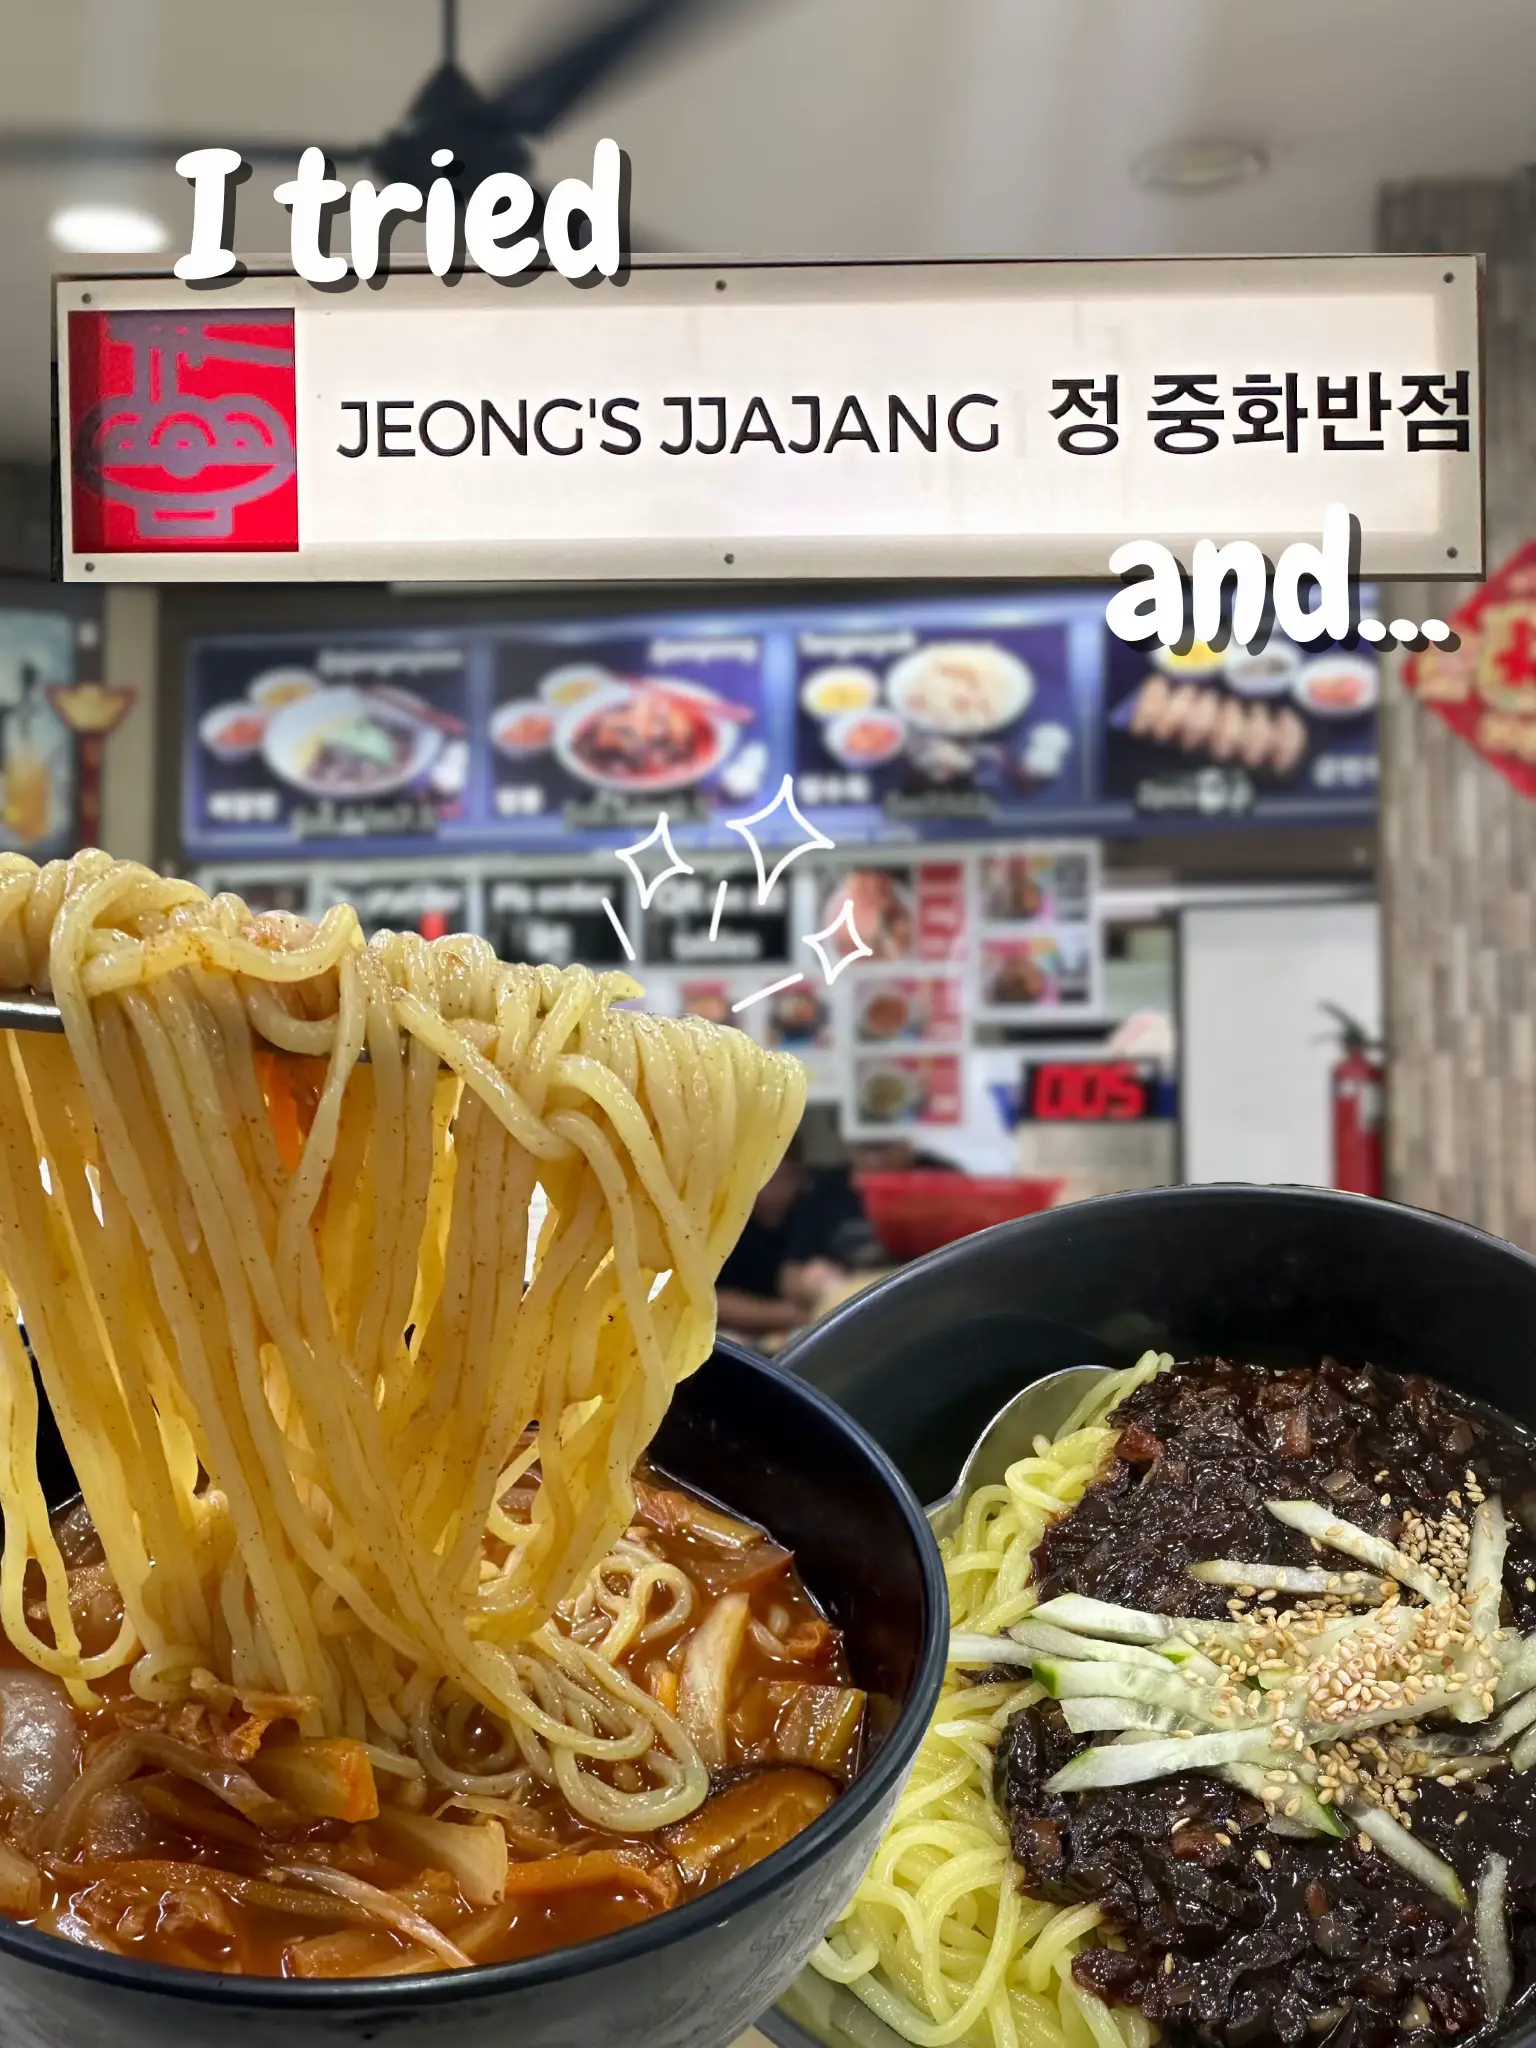 I tried Jeong’s Jjajang and…'s images(0)